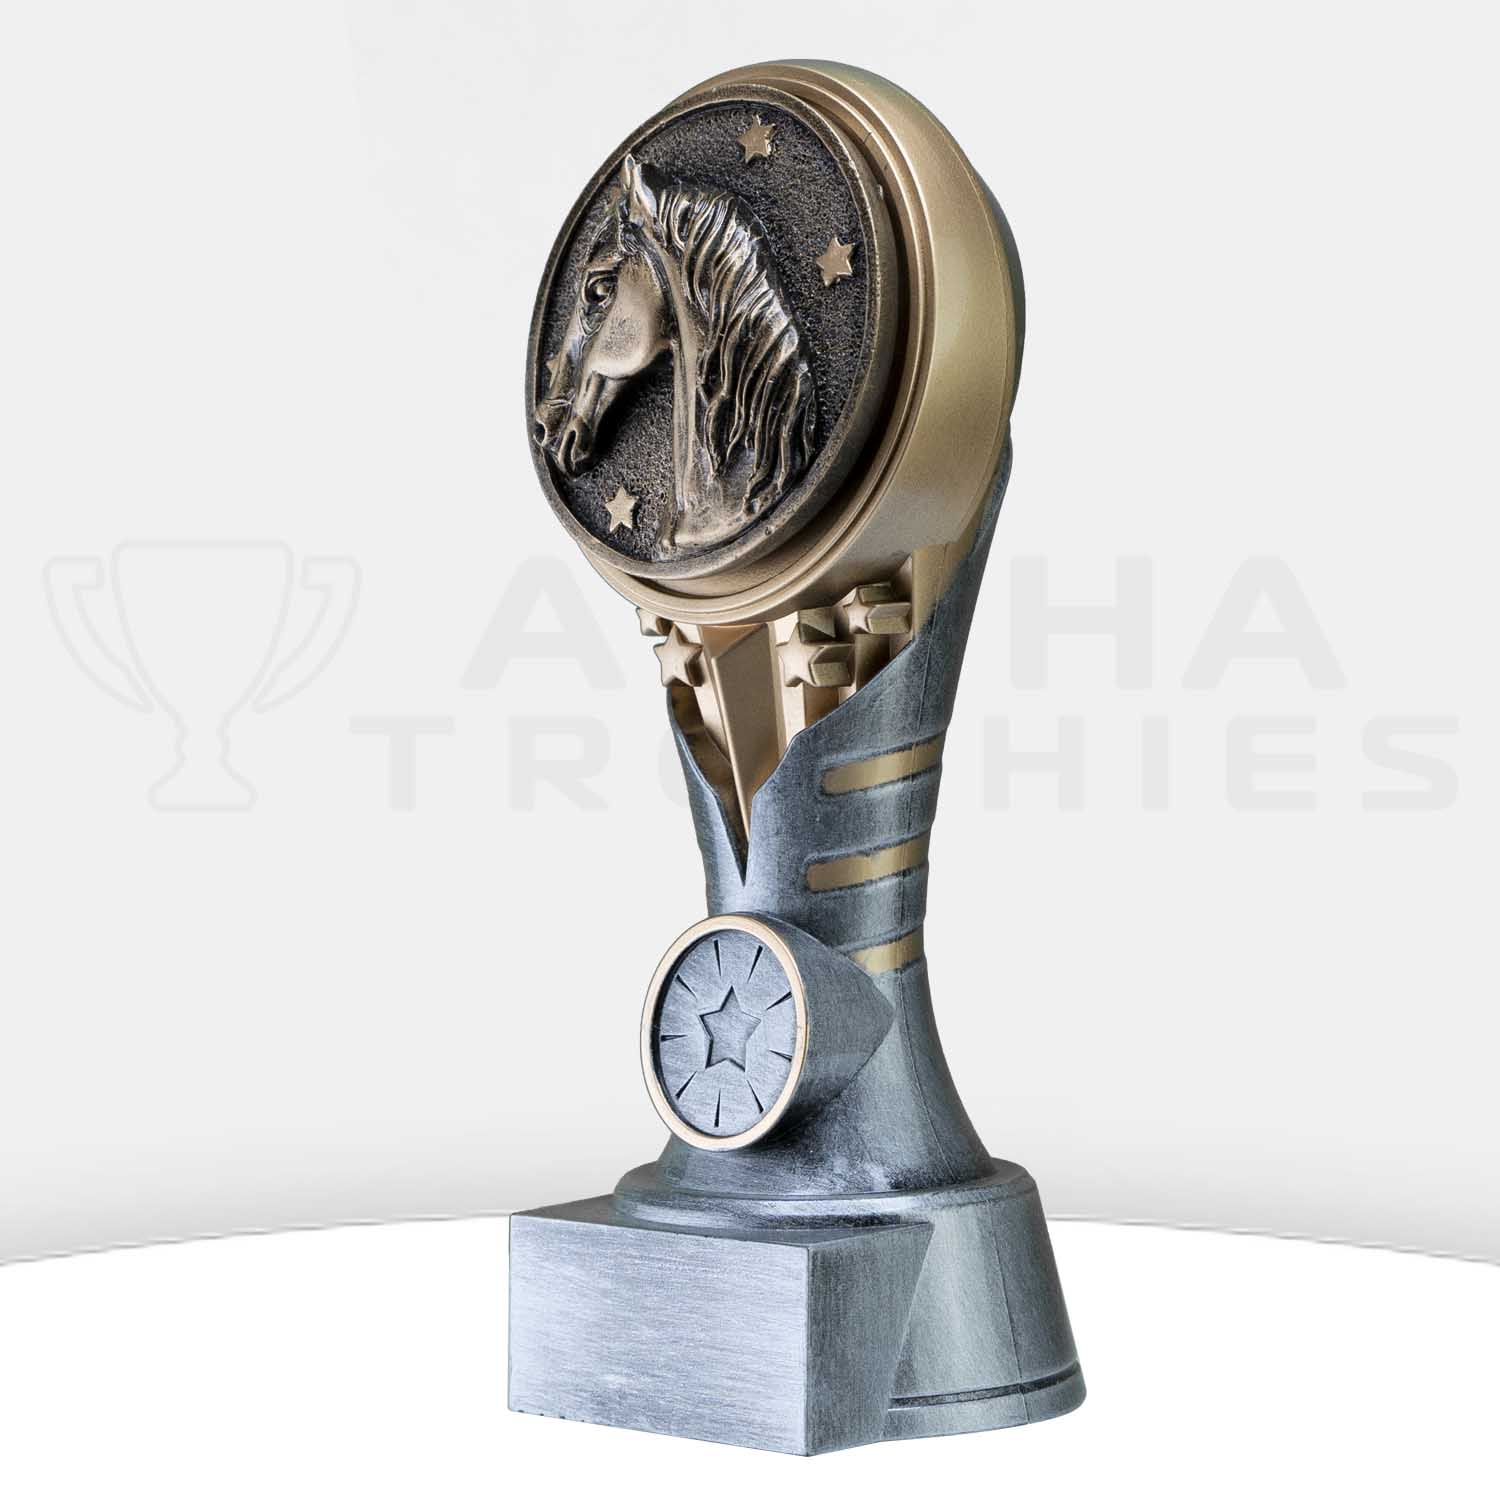 ikon-trophy-horse-kn235a-side